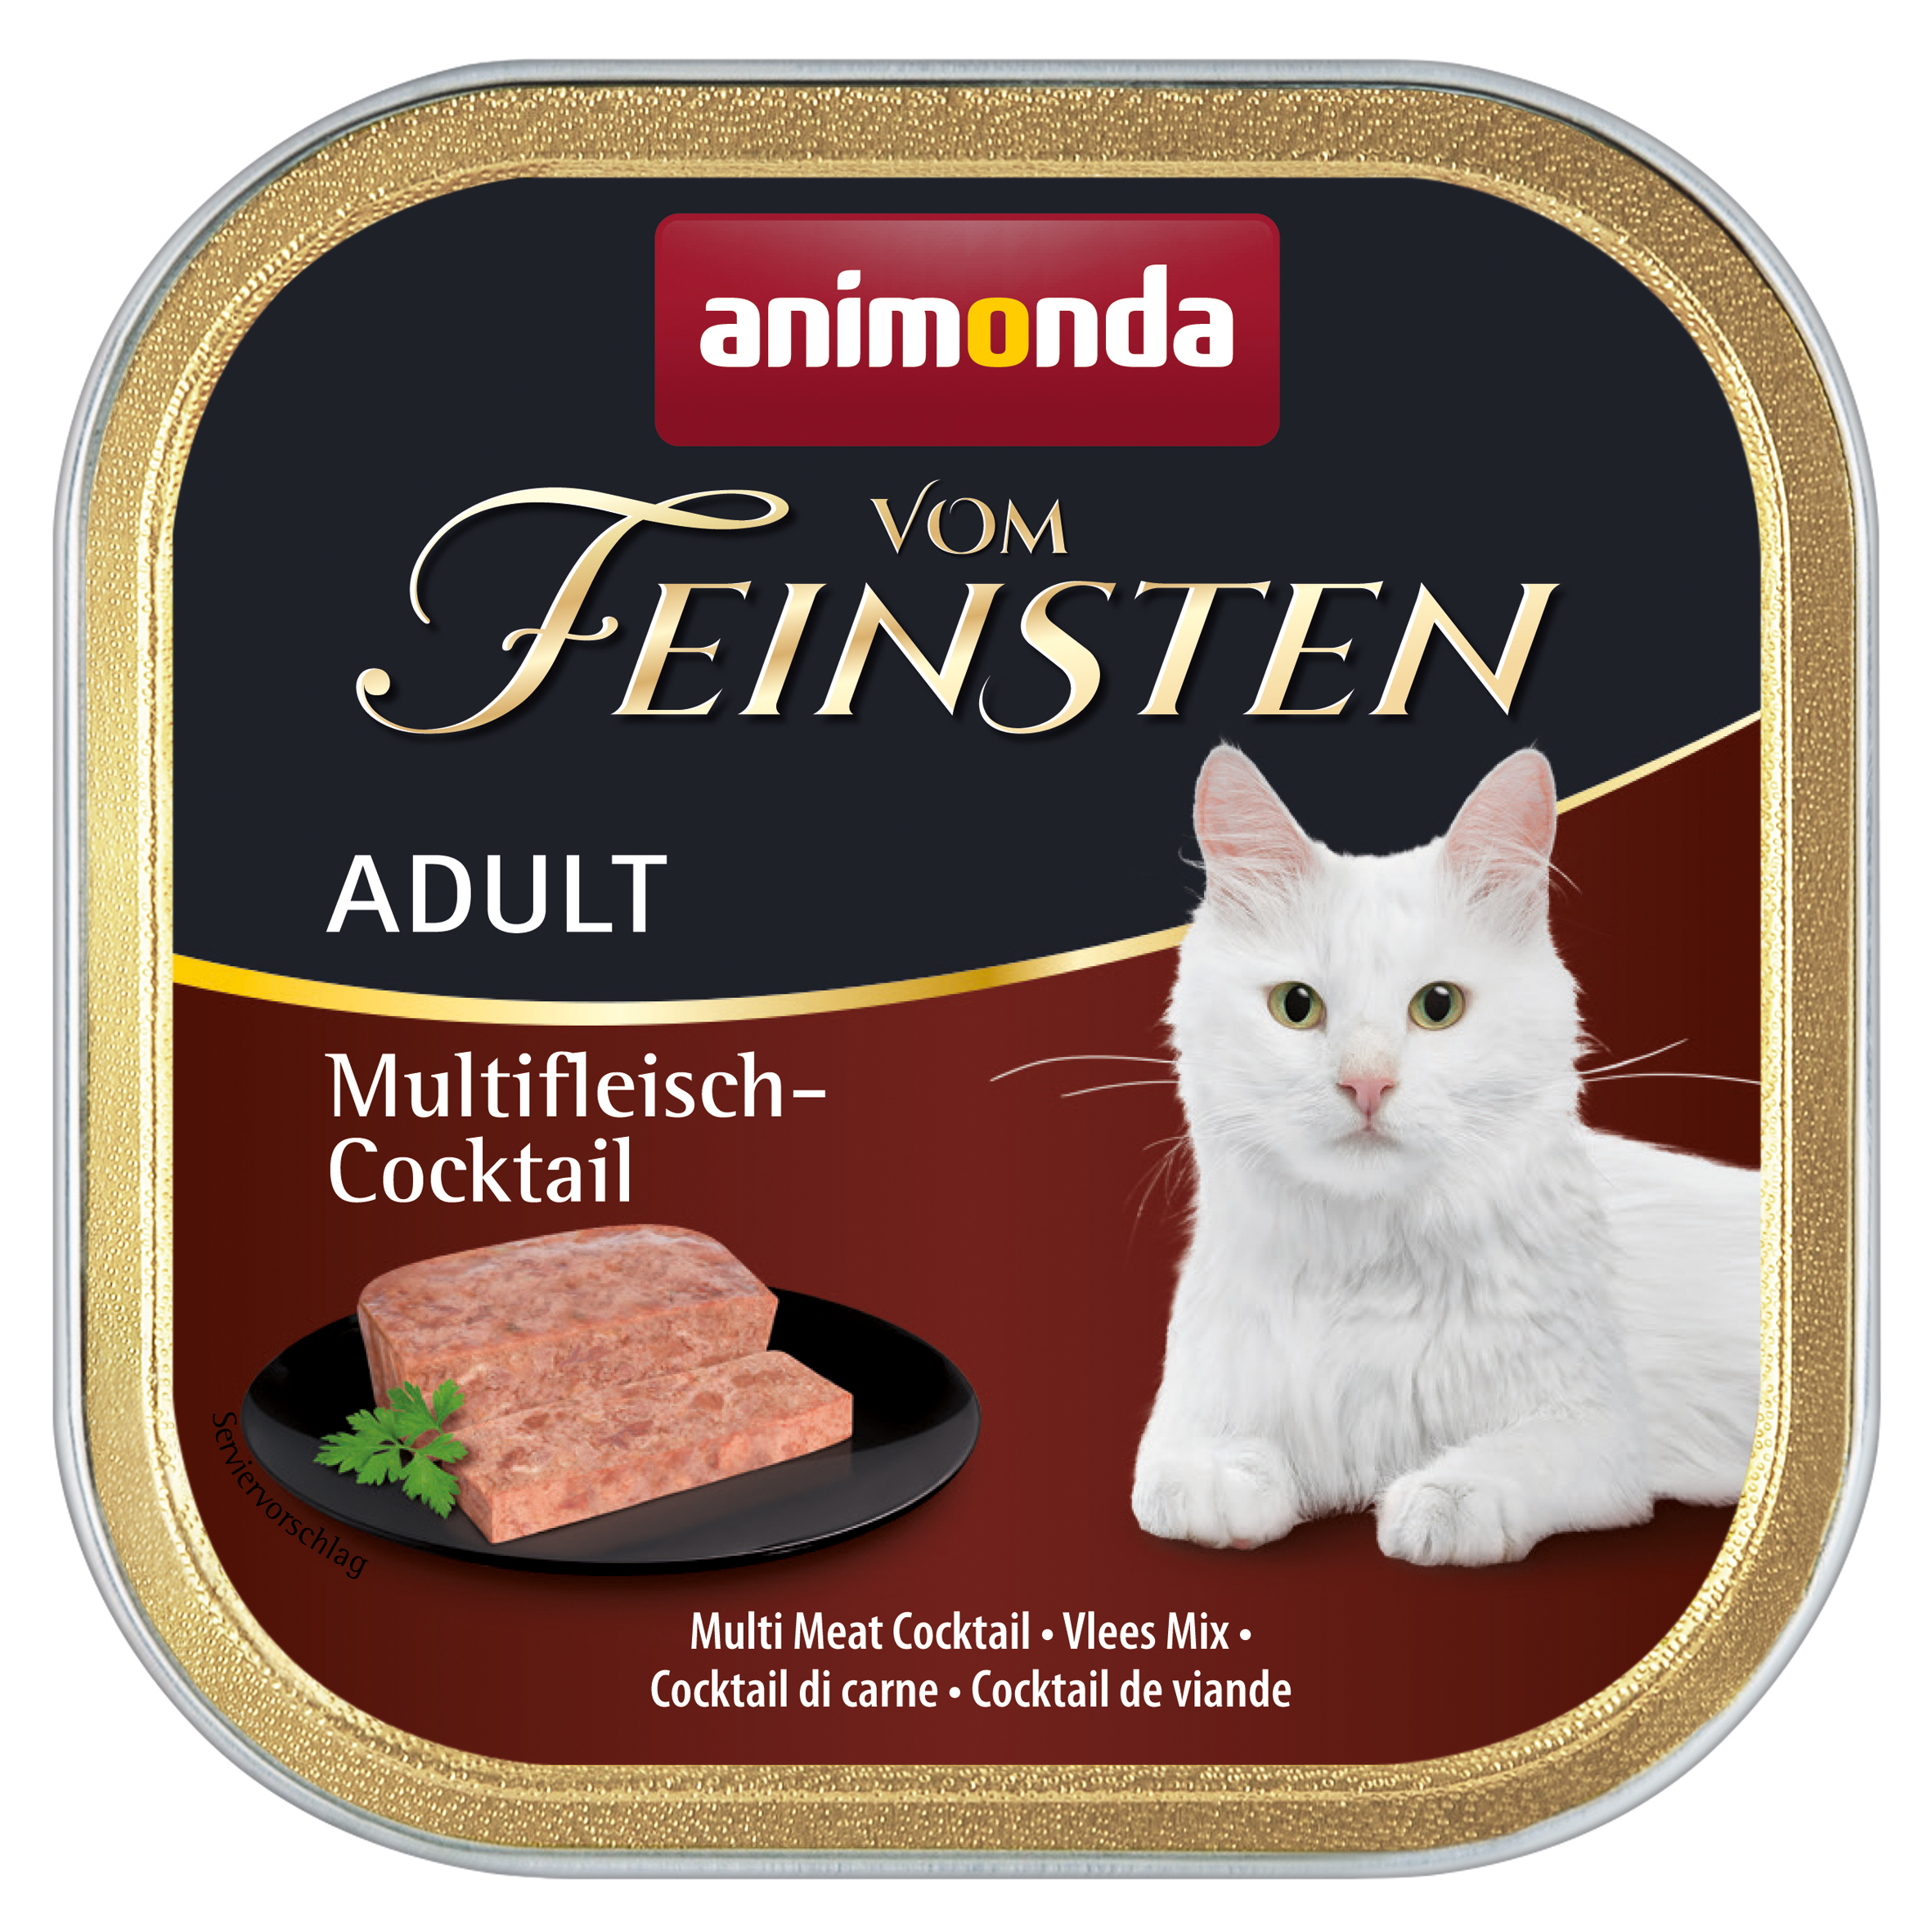 Animonda vom Feinsten Adult Multifleisch-Cocktail 100g